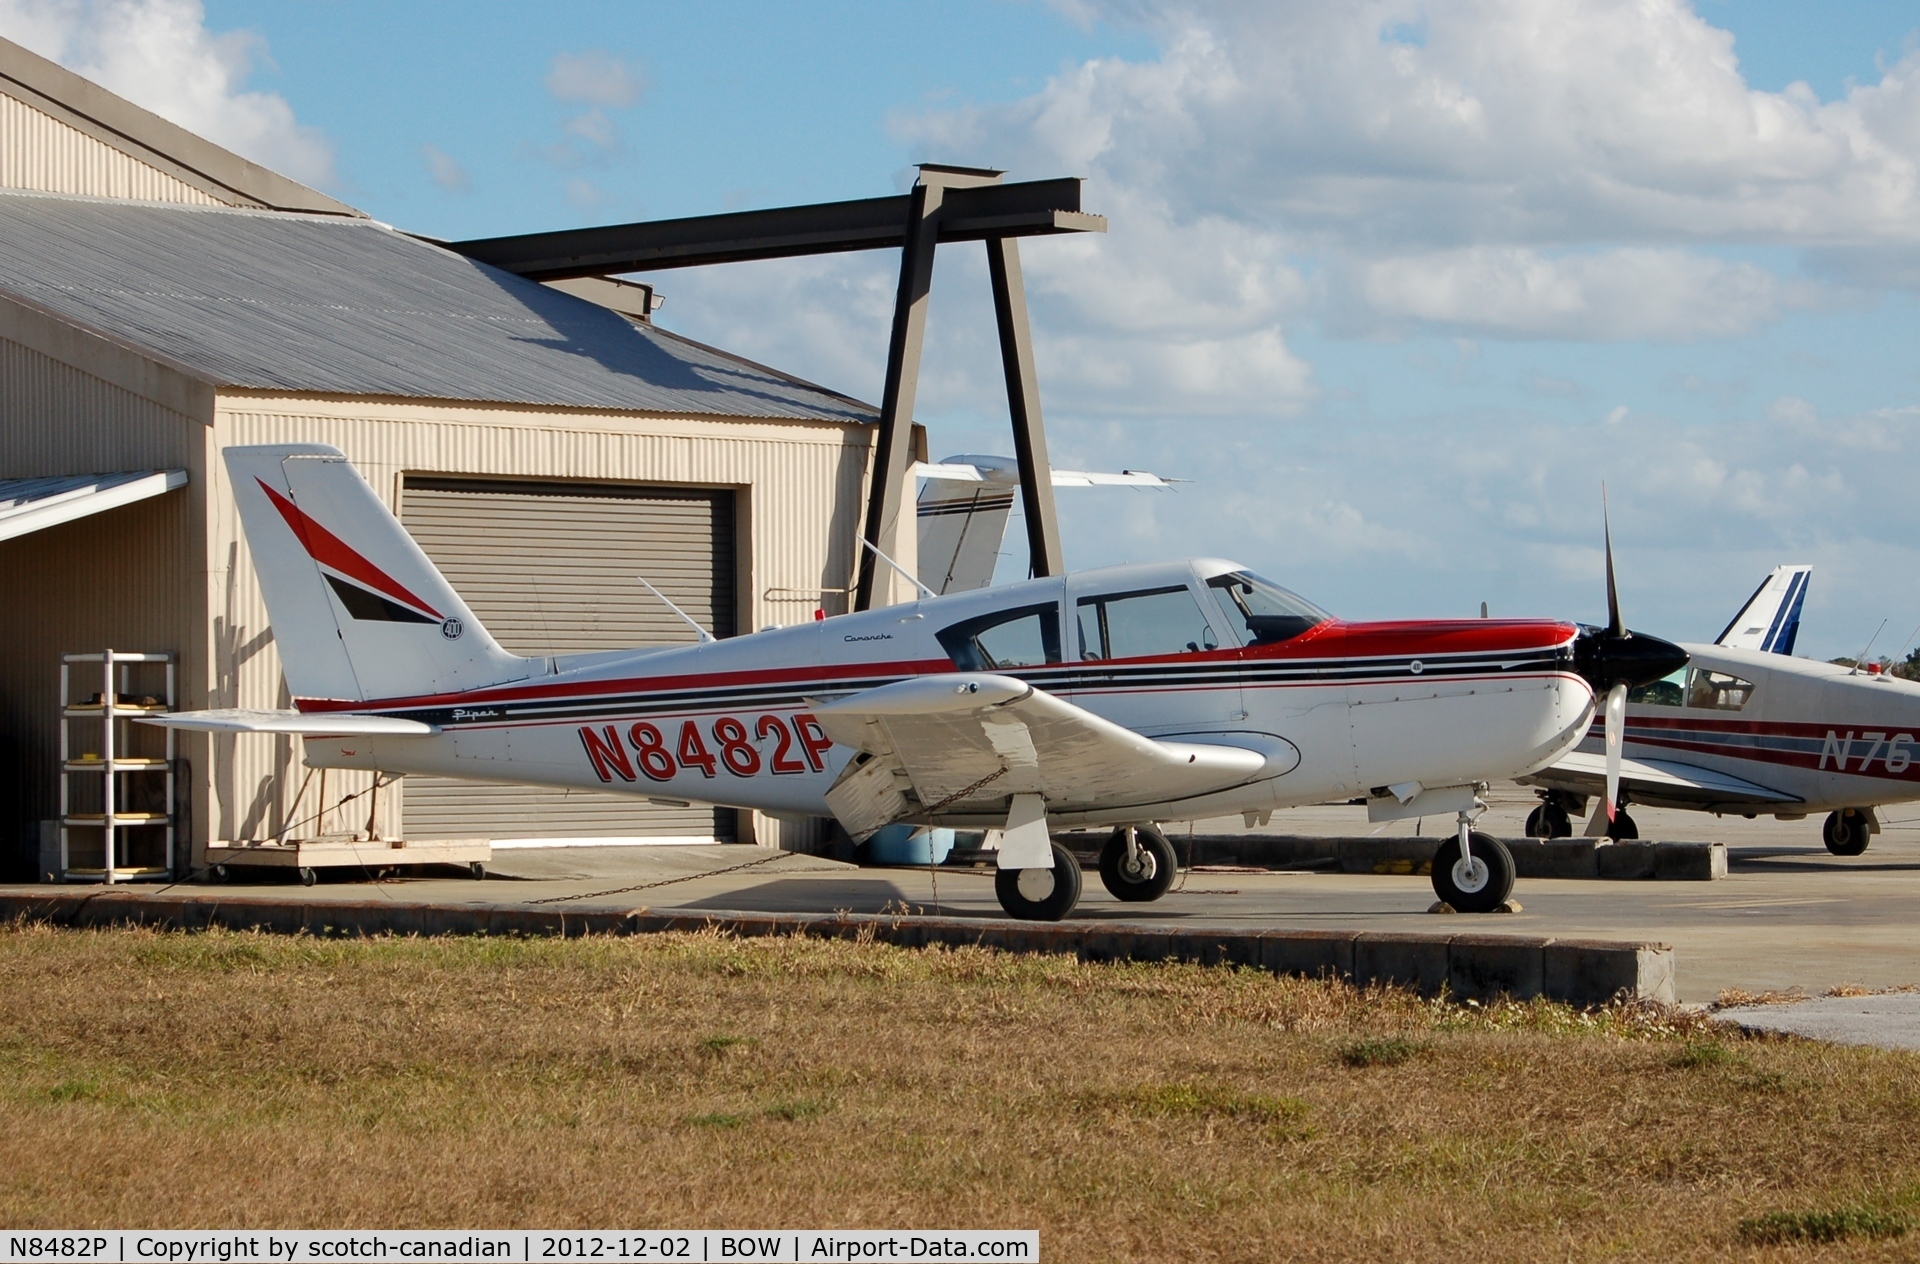 N8482P, 1964 Piper PA-24-400 Comanche 400 C/N 26-61, 1964 Piper PA-24-400, N8482P, at Bartow Municipal Airport, Bartow, FL 